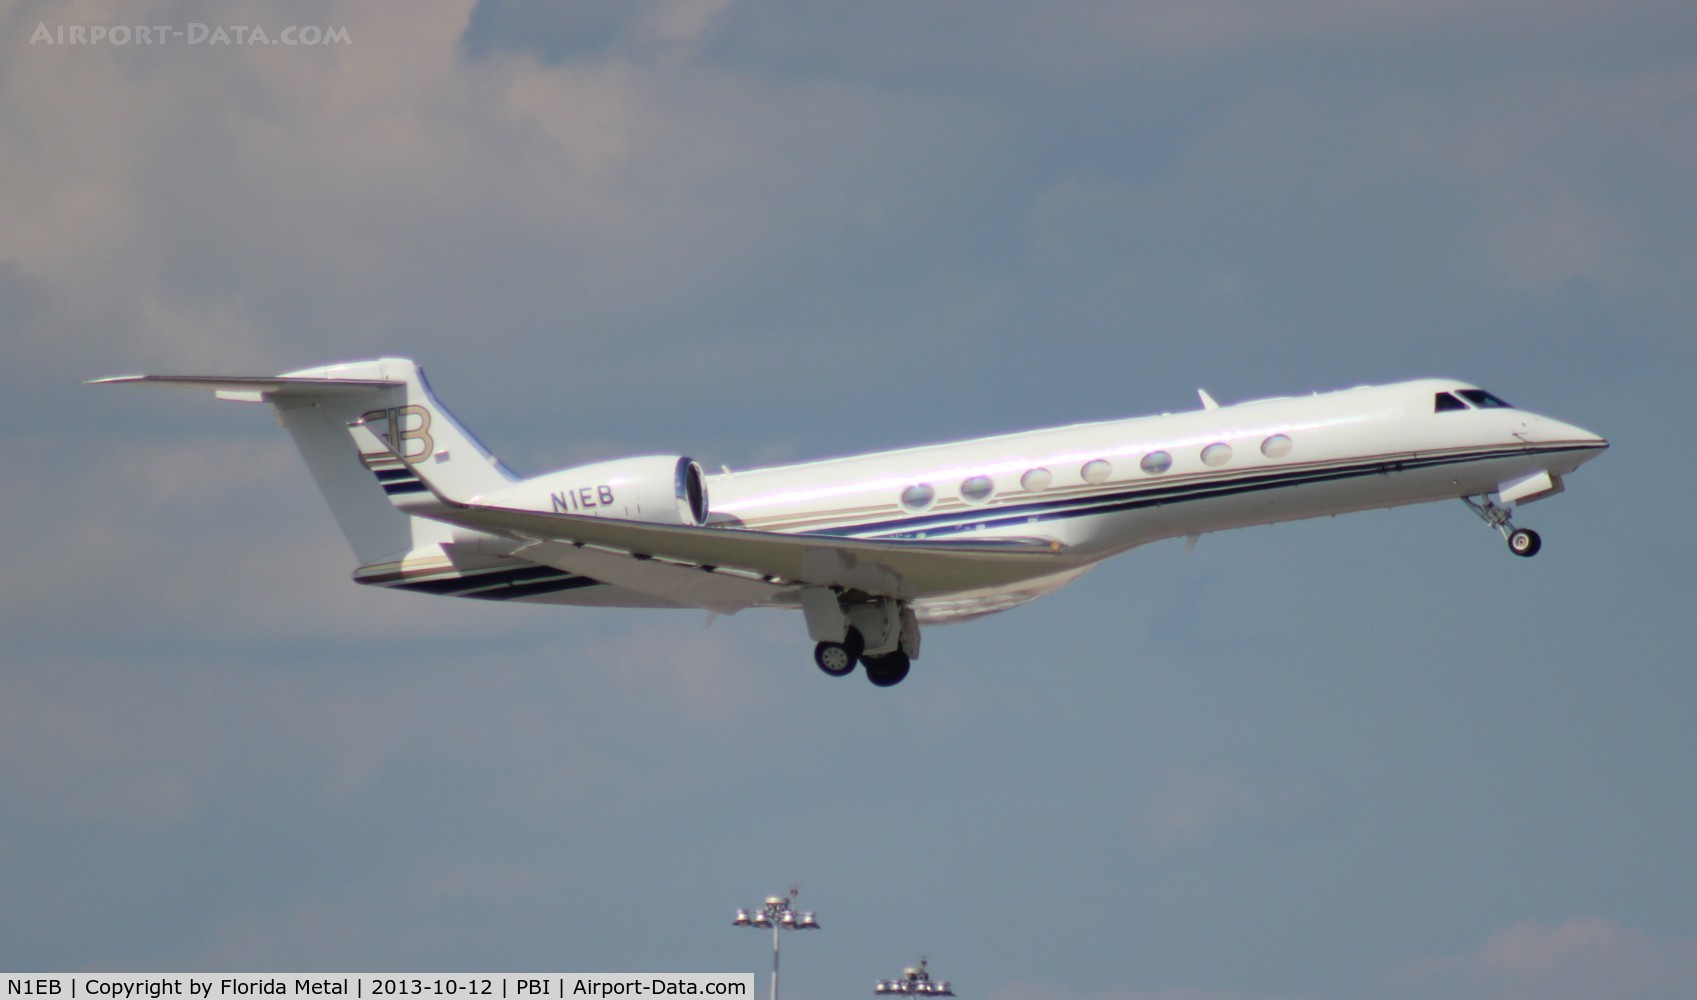 N1EB, 2008 Gulfstream Aerospace GV-SP (G550) C/N 5194, Rush Limbaugh's G550